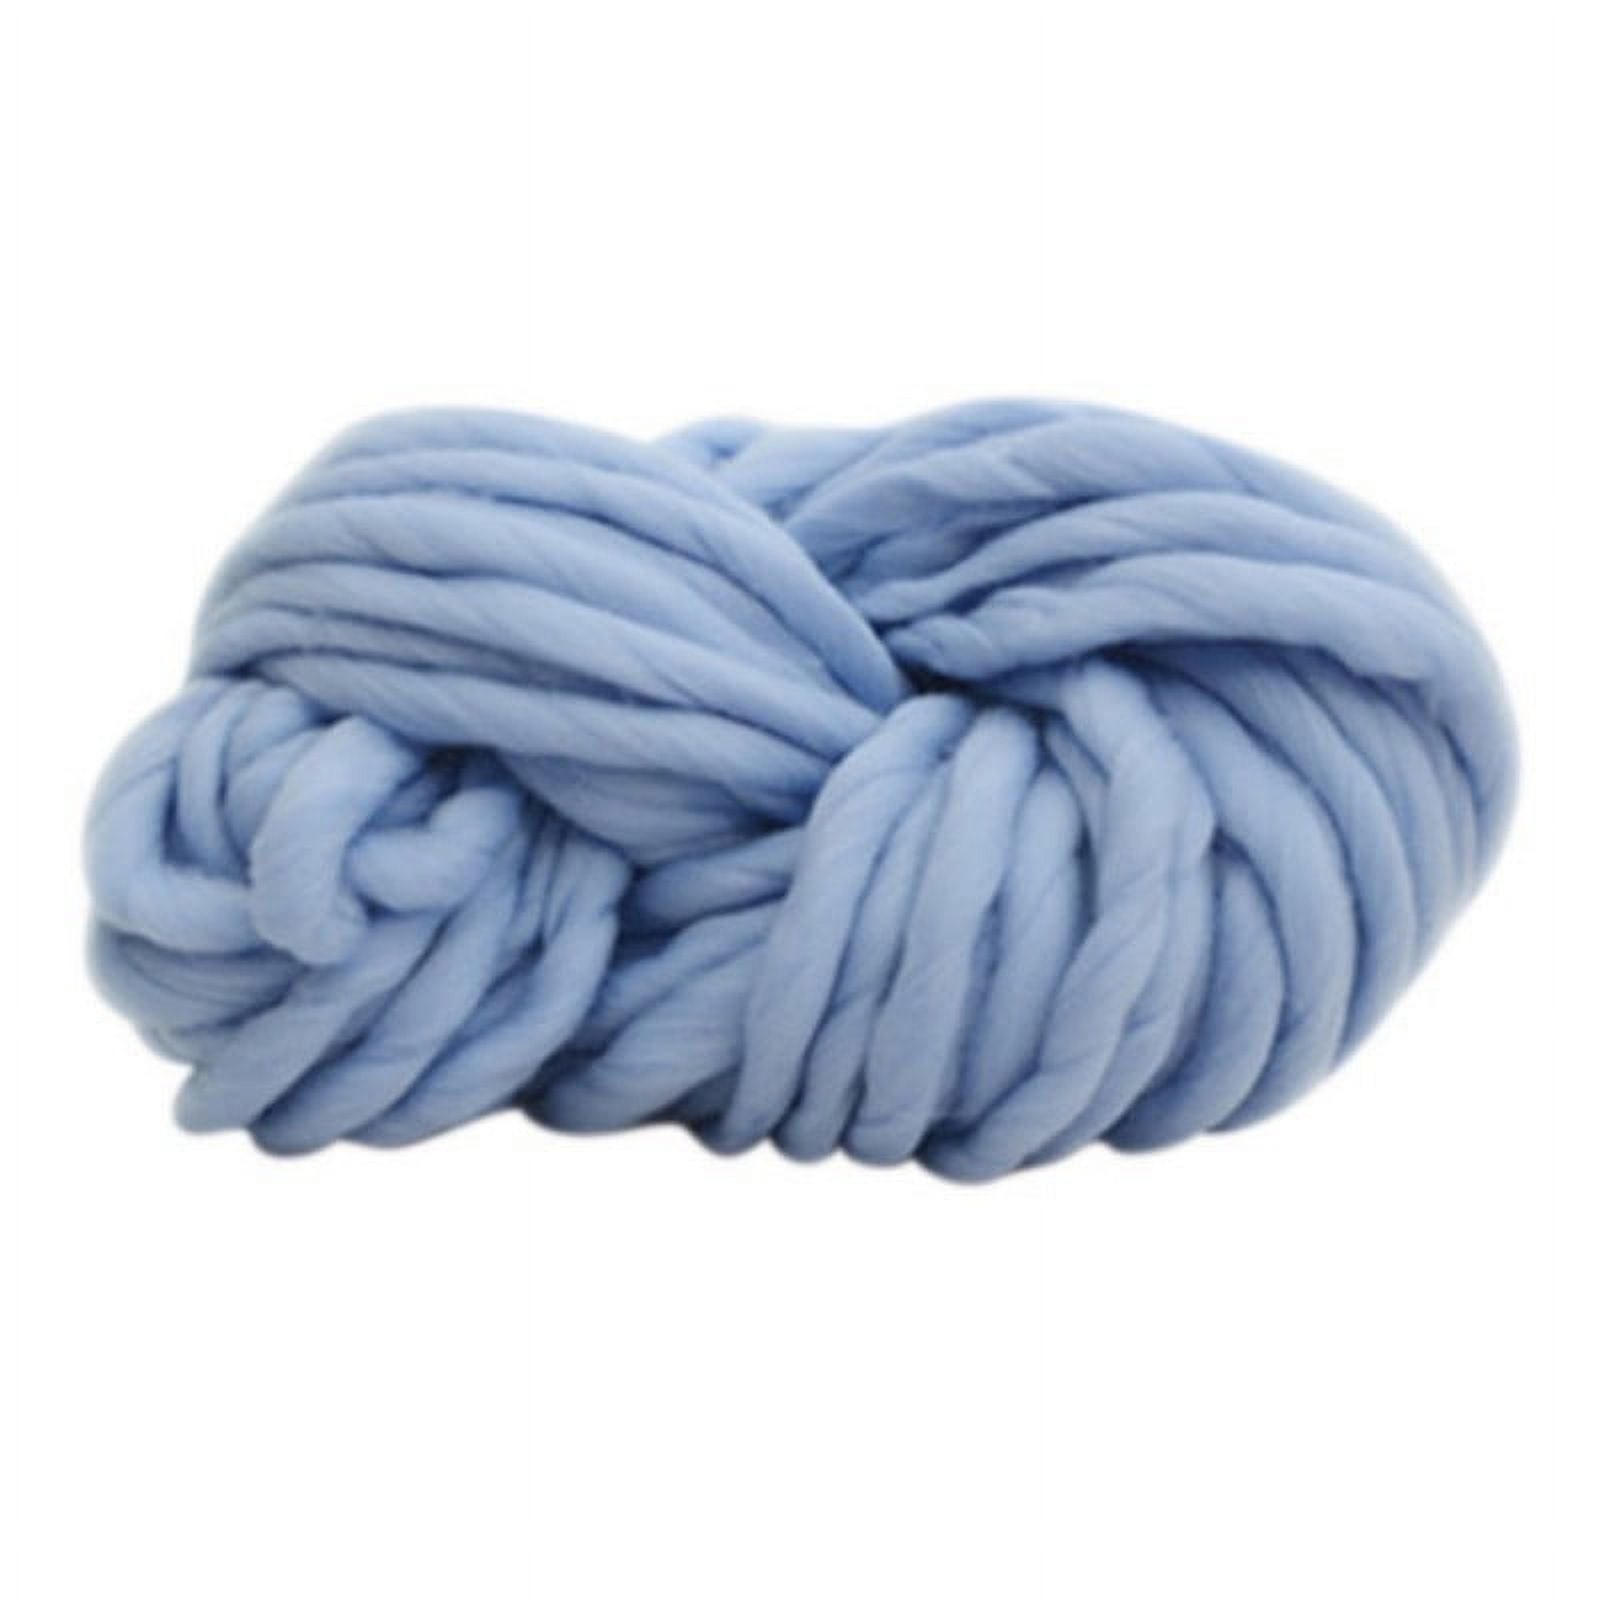 Yinrunx DIY super soft and chunky wool yarn bulky arm knit woolen woolen  crochet yarn chunky blanket DIY cotton Yuarn Diy yarn blanket wool fleece  blanket DIY knitting crochet felt (Brown) 